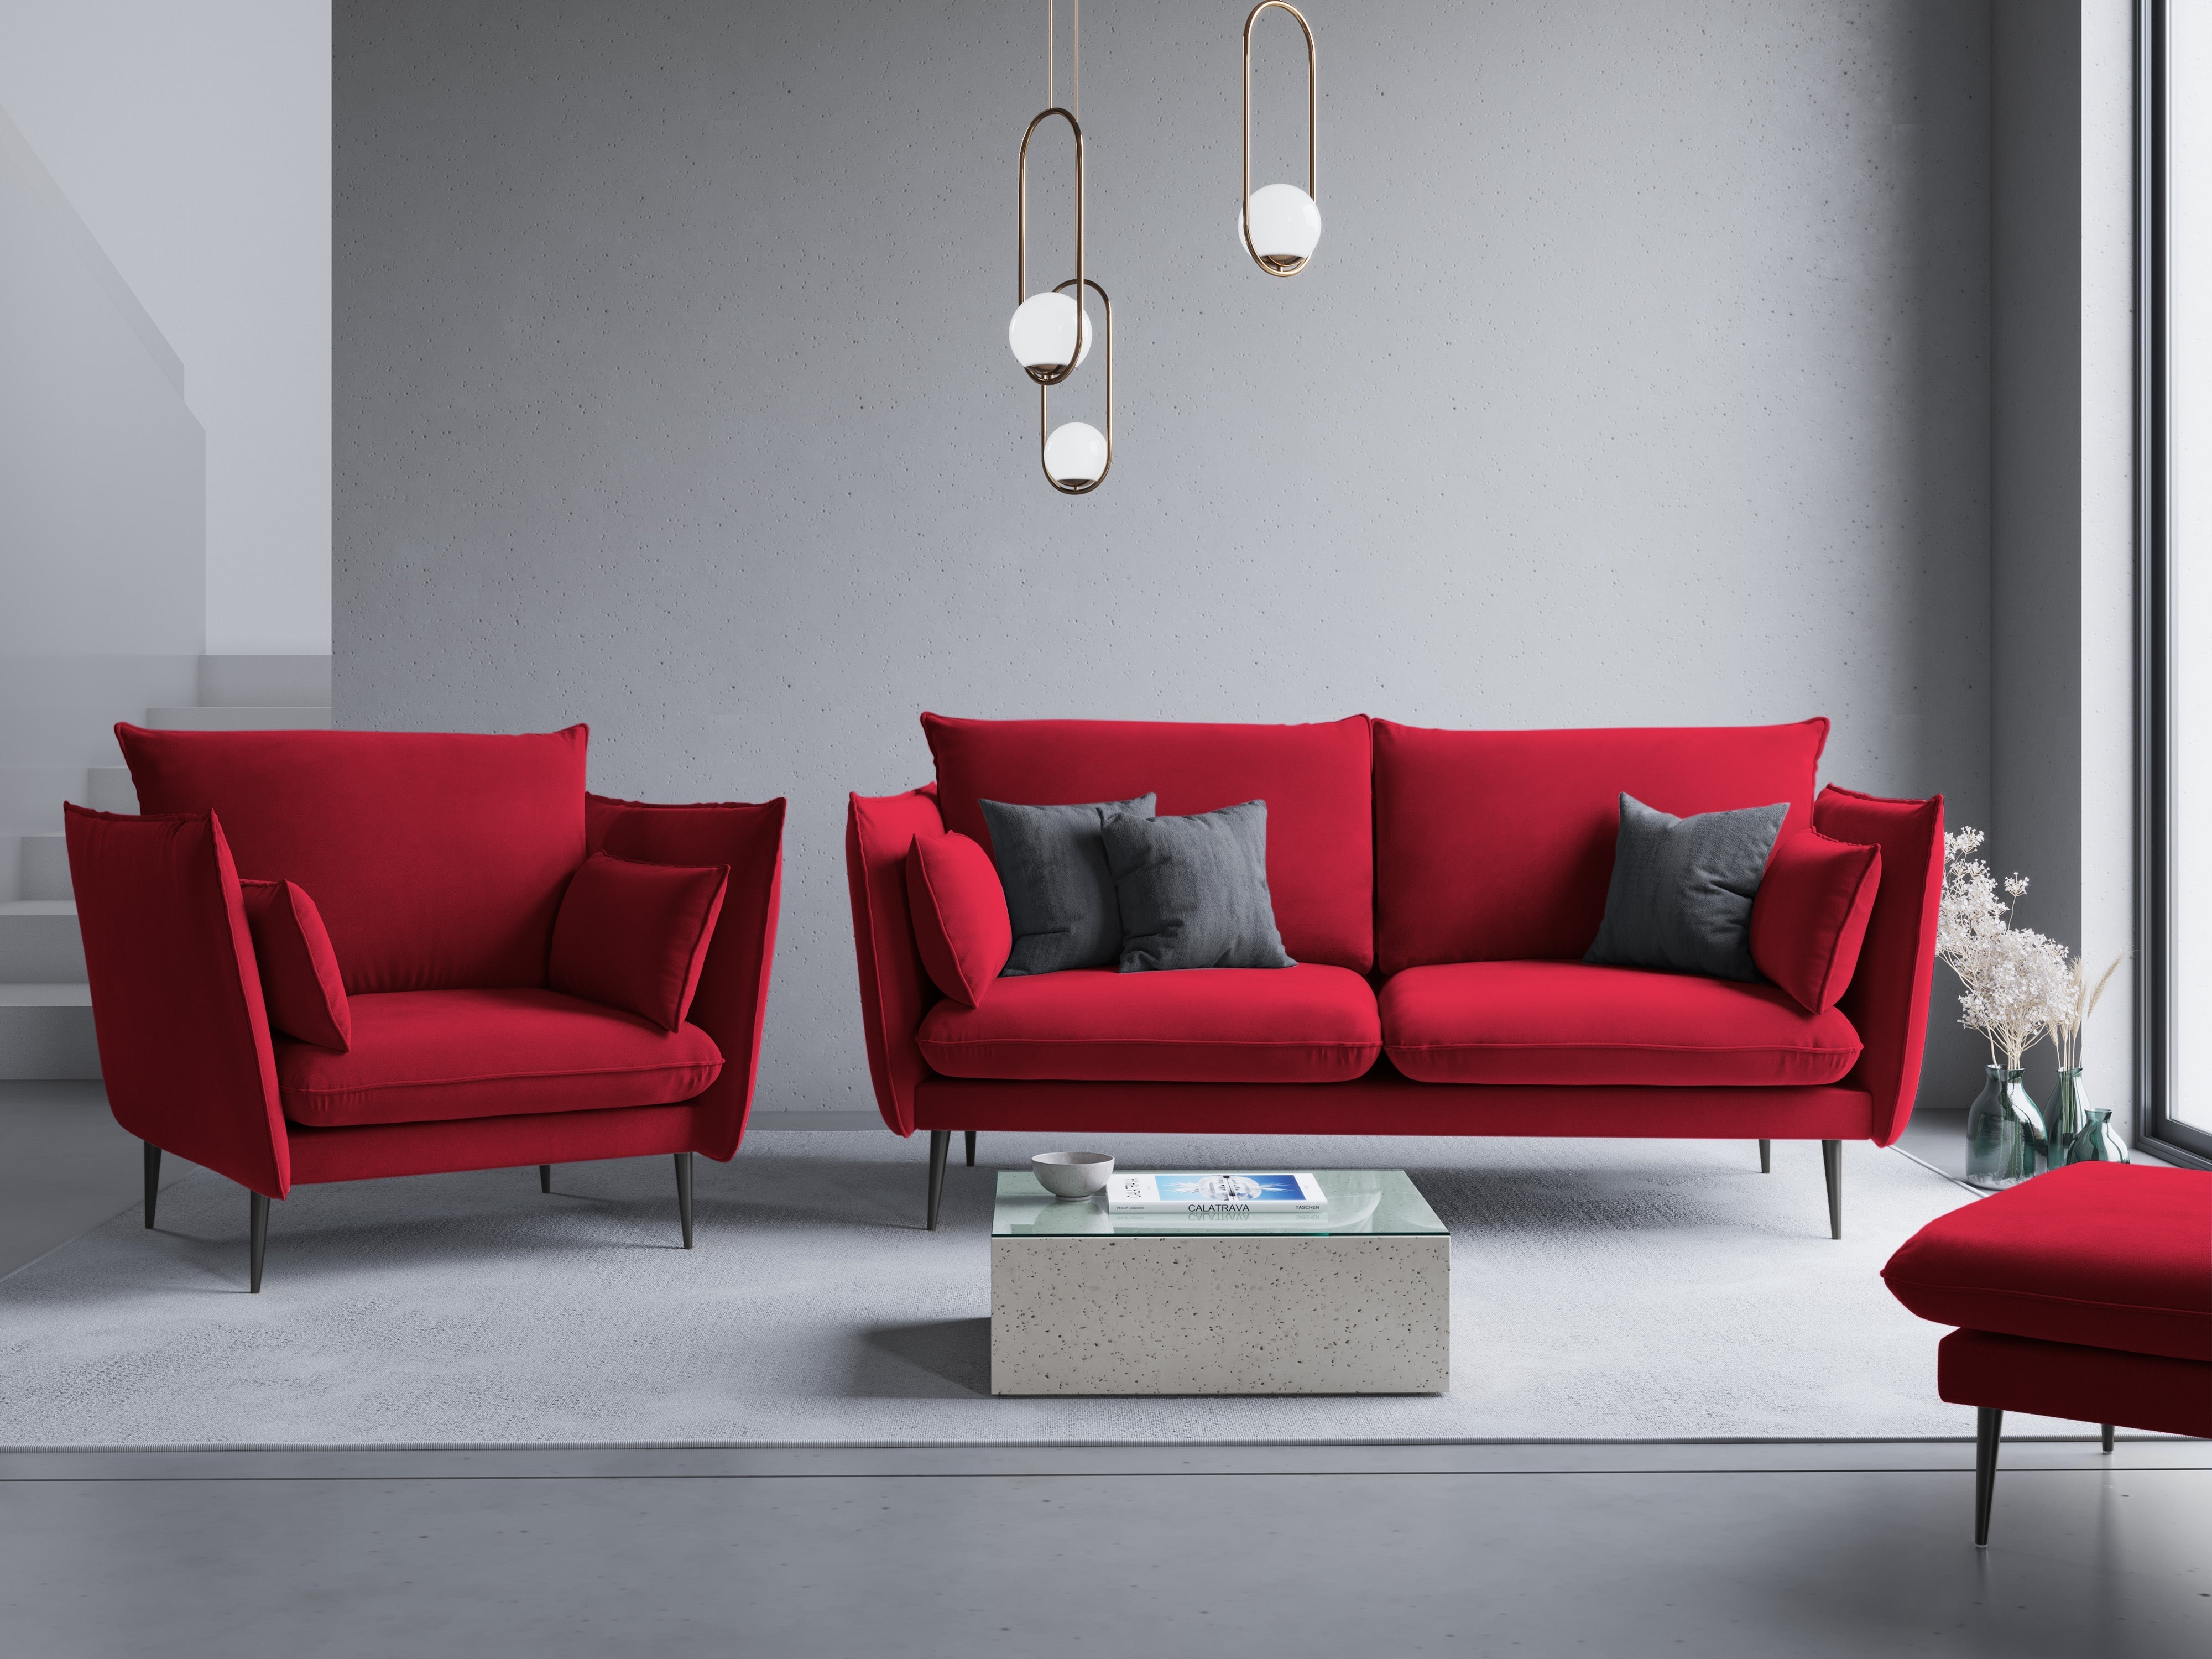 Glamor red sofa